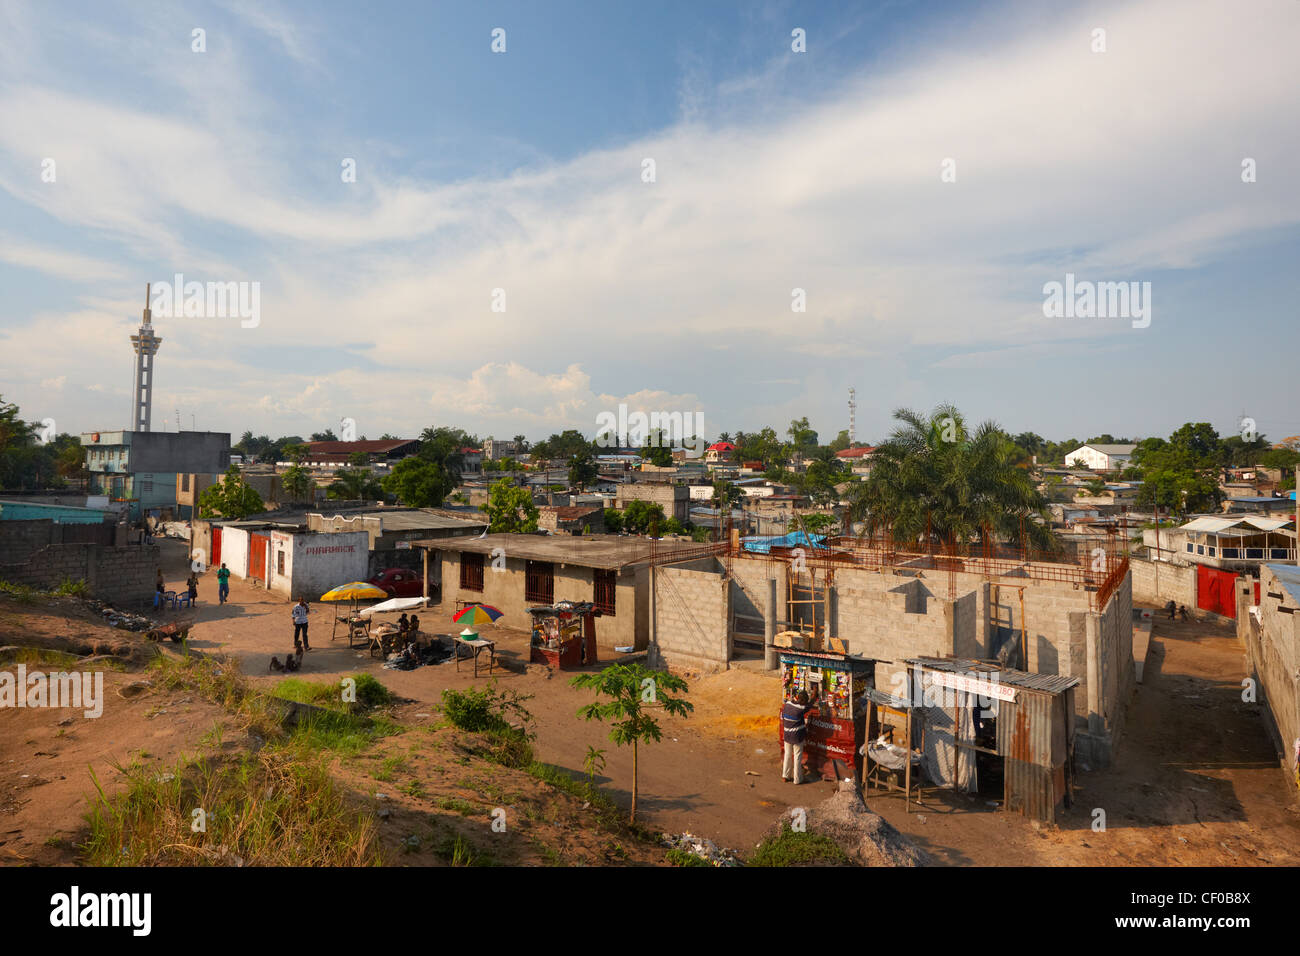 La commune de Limete, Kinshasa, République démocratique du Congo, l'Afrique Banque D'Images